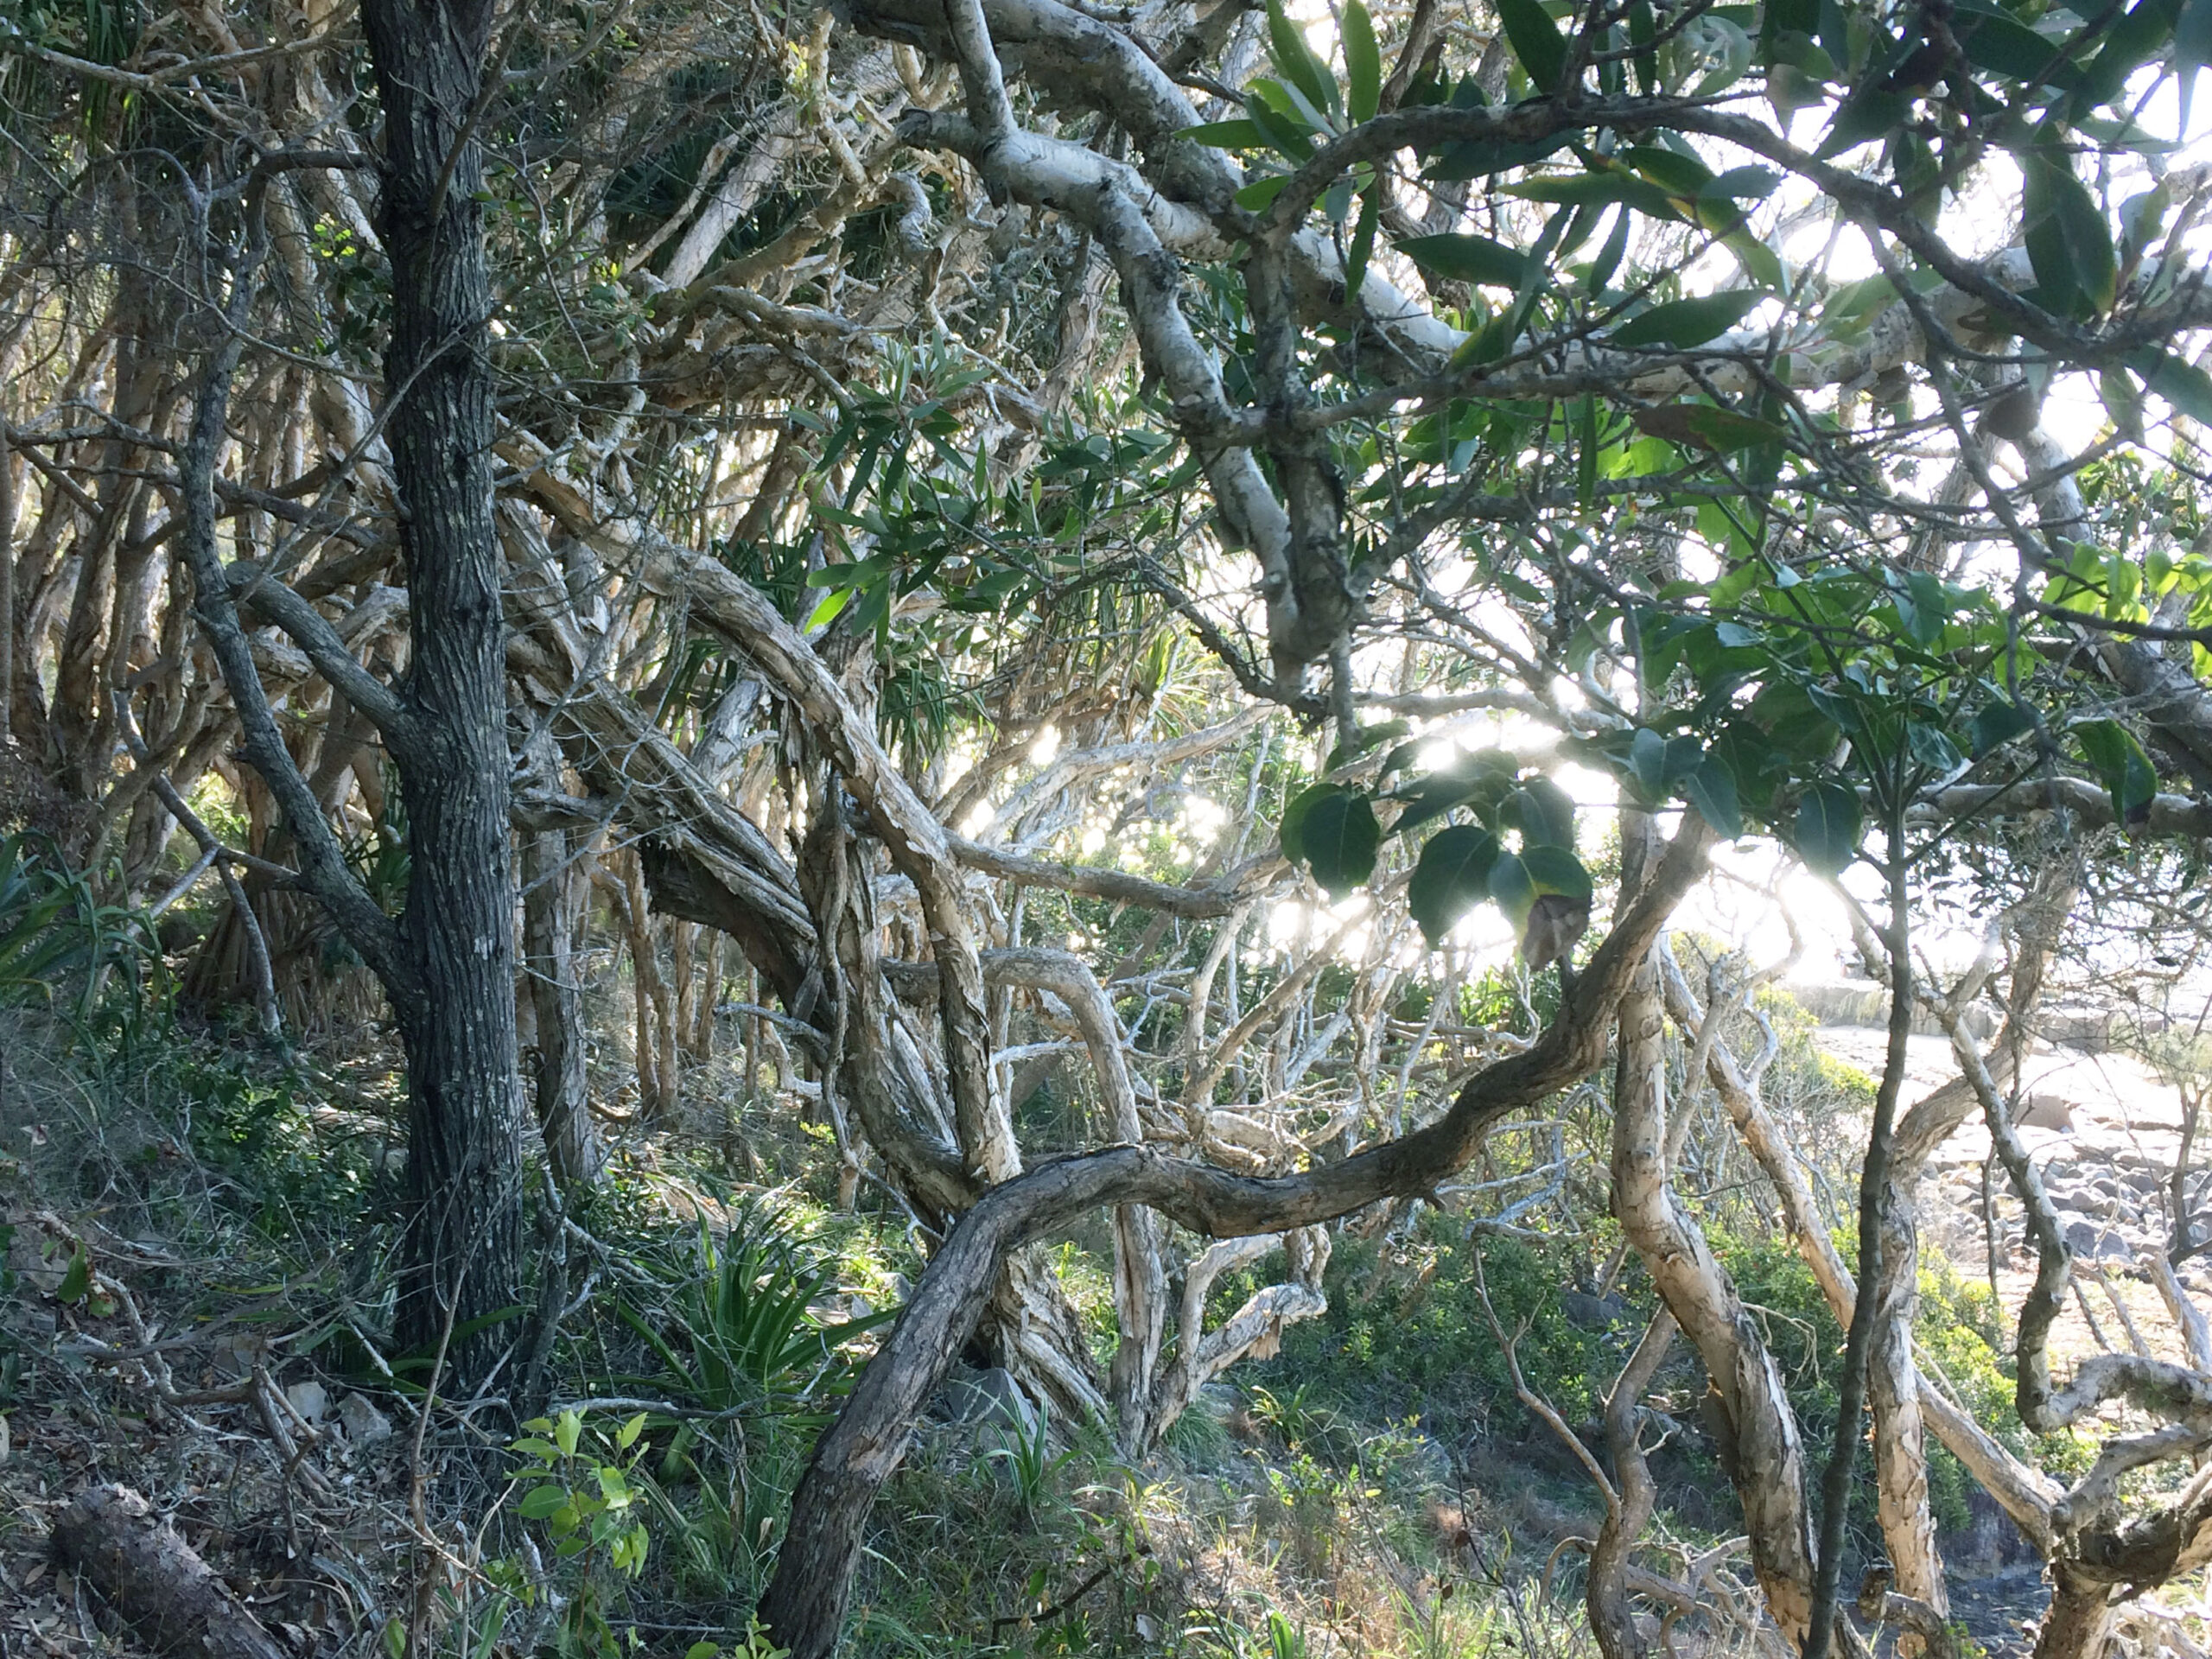 Tea trees by the ocean, Noosa, Queensland.